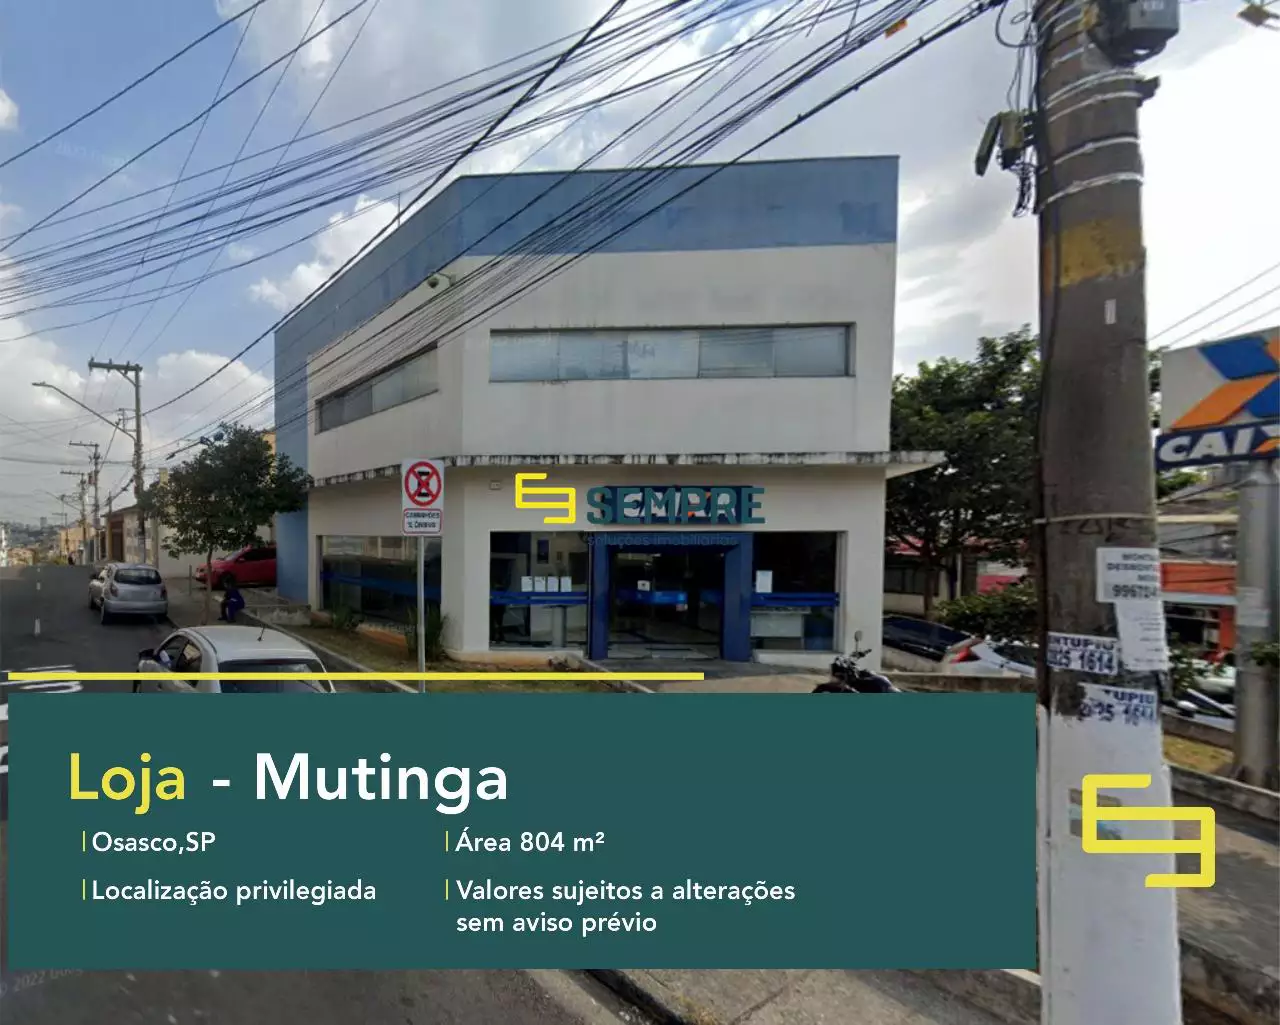 Loja para vender em Mutinga Osasco/SP, em excelente localização. O estabelecimento comercial conta com área de 804 m².